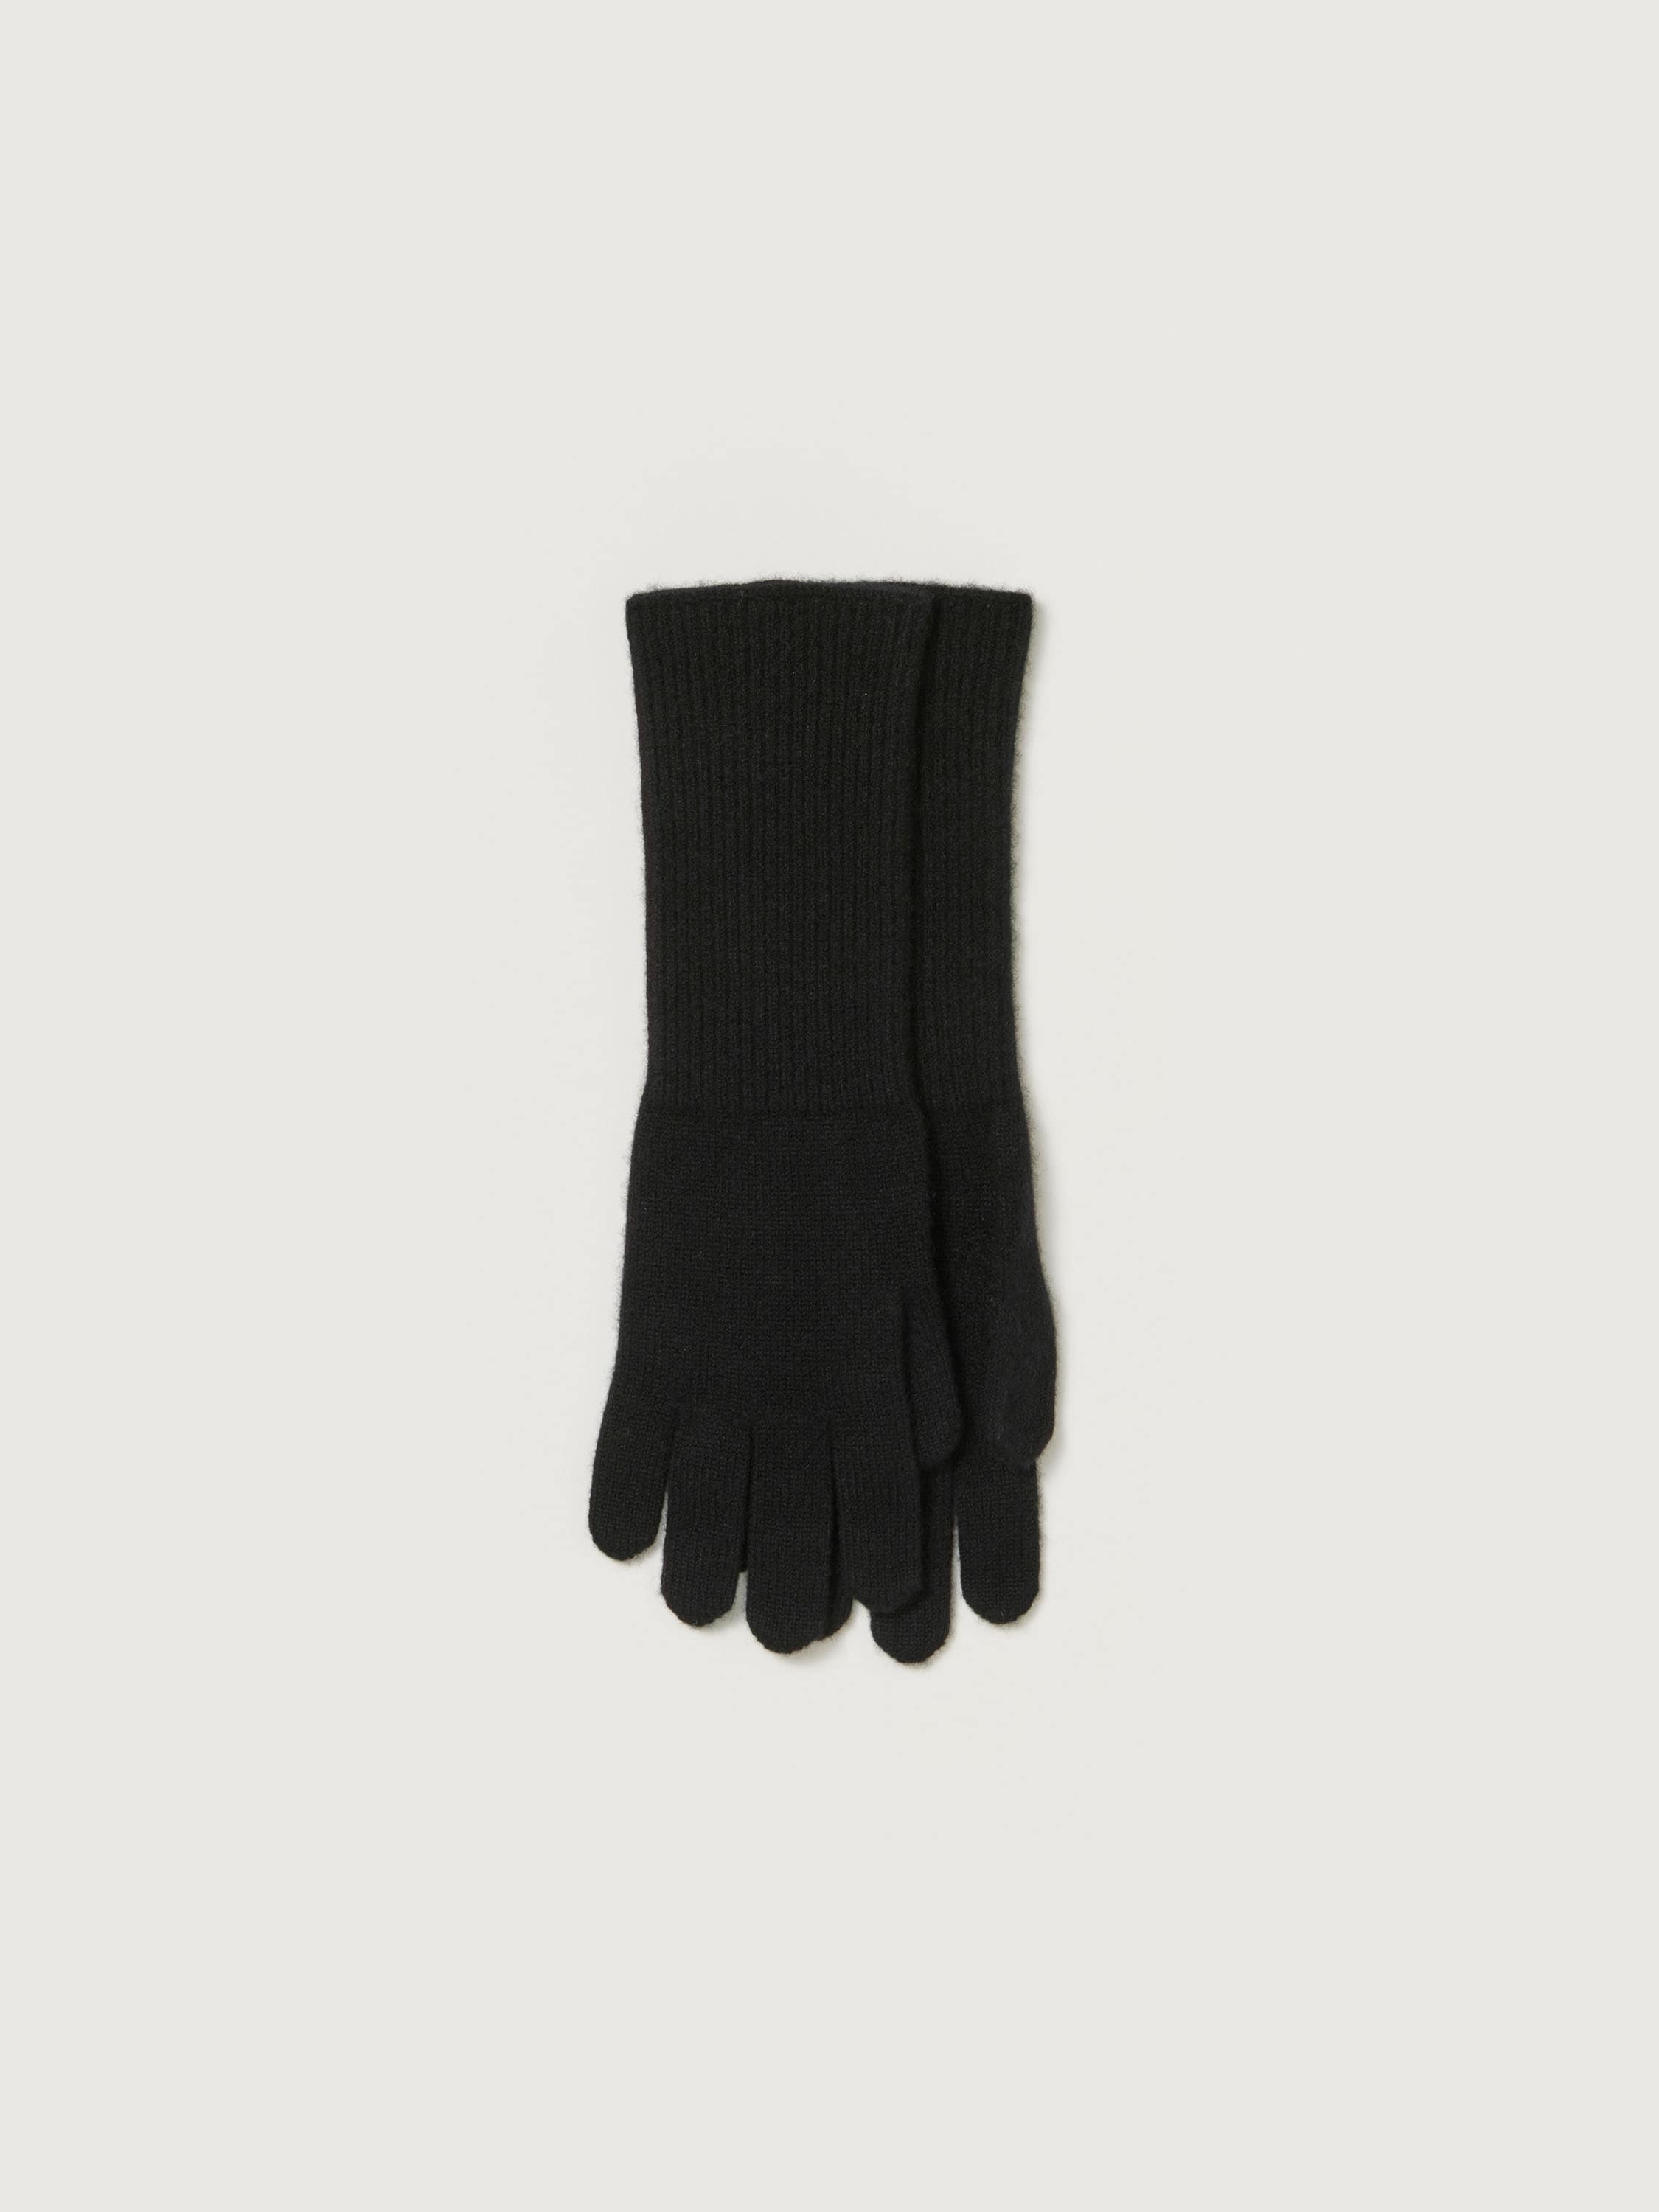 何年前の商品でしょうかAURALEE cashmere knit leather gloves ...